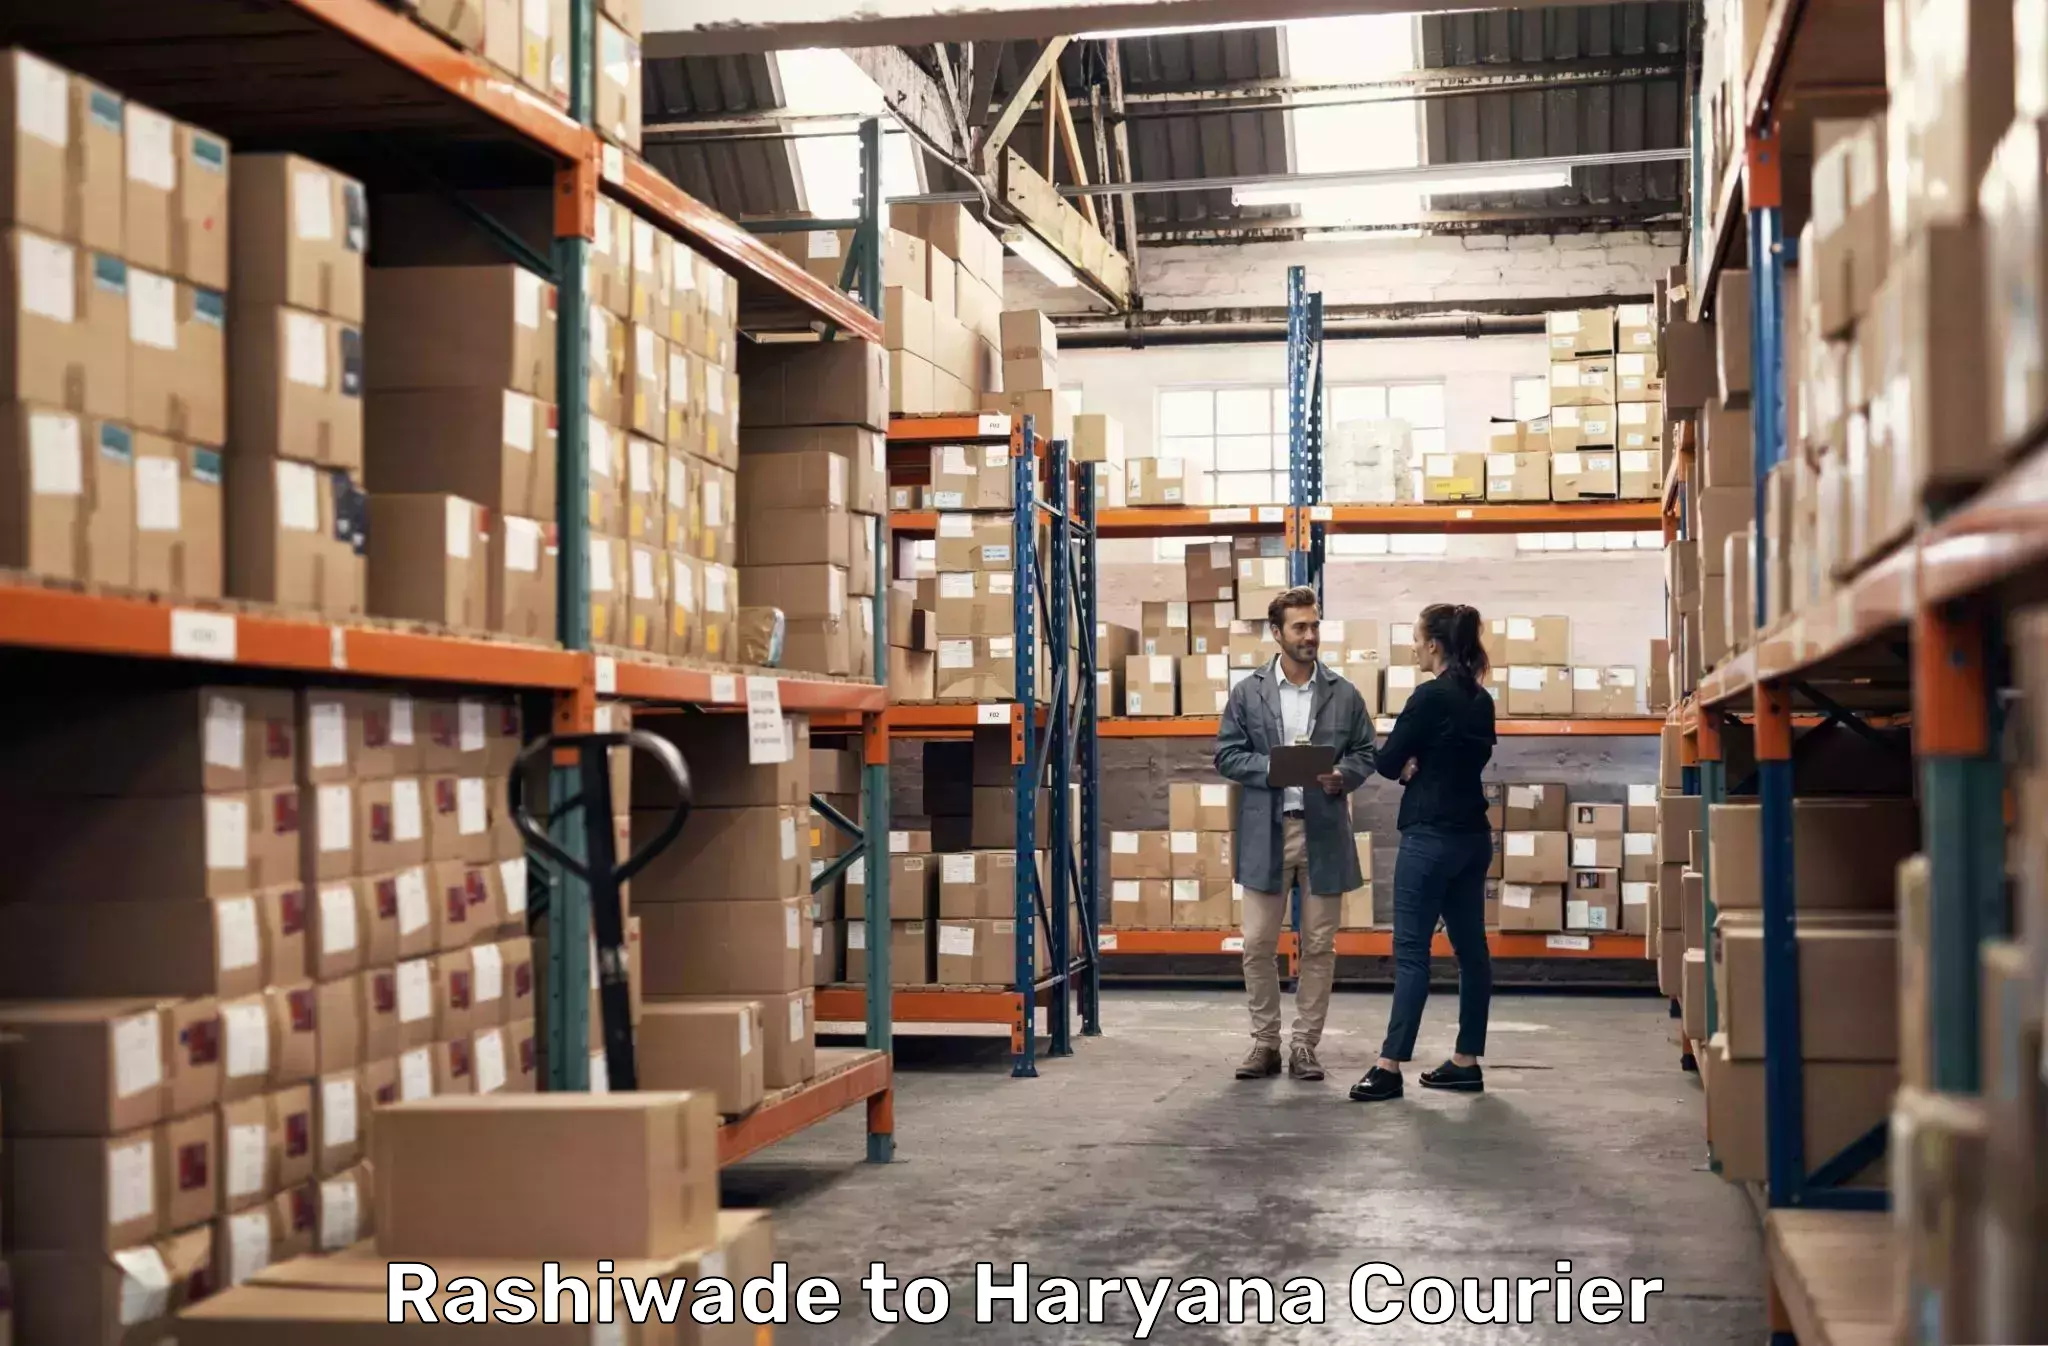 Logistics management Rashiwade to Chaudhary Charan Singh Haryana Agricultural University Hisar